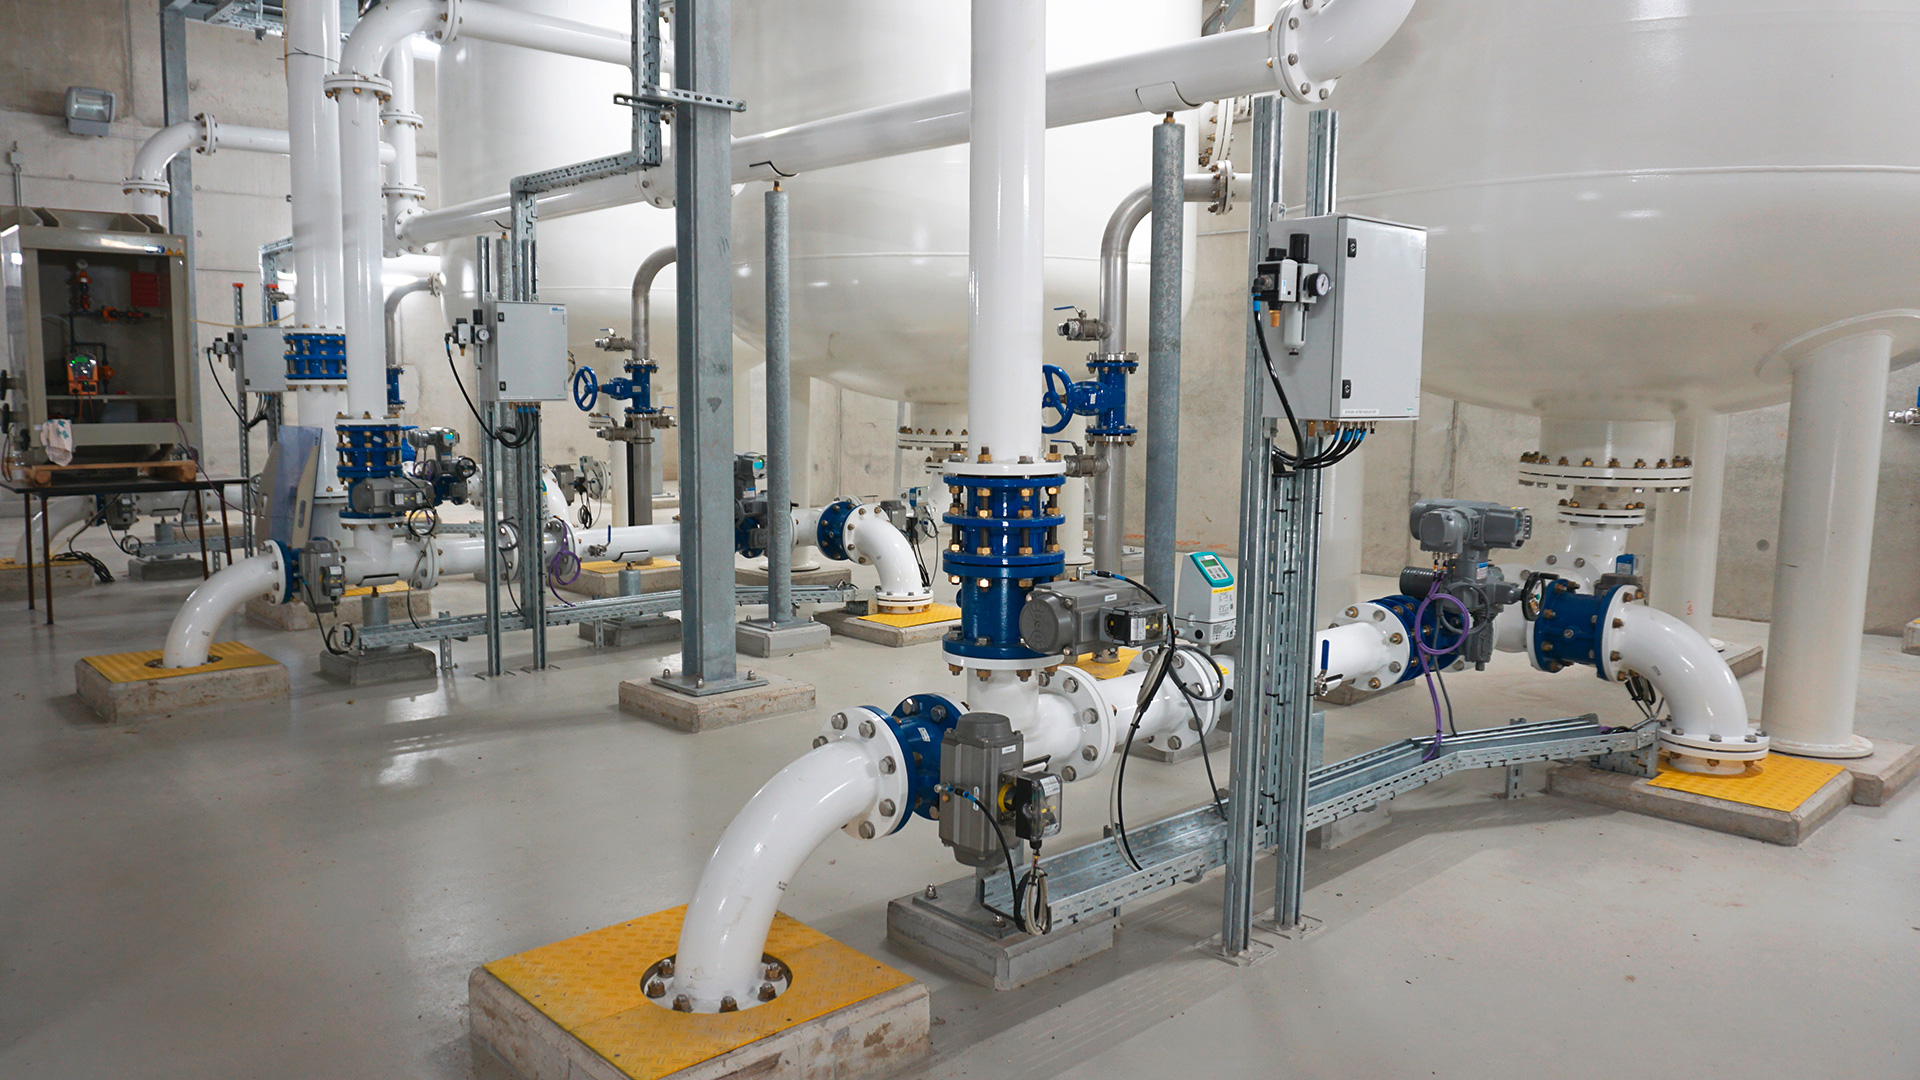 Belgium Water Treatment plant in Eeklo